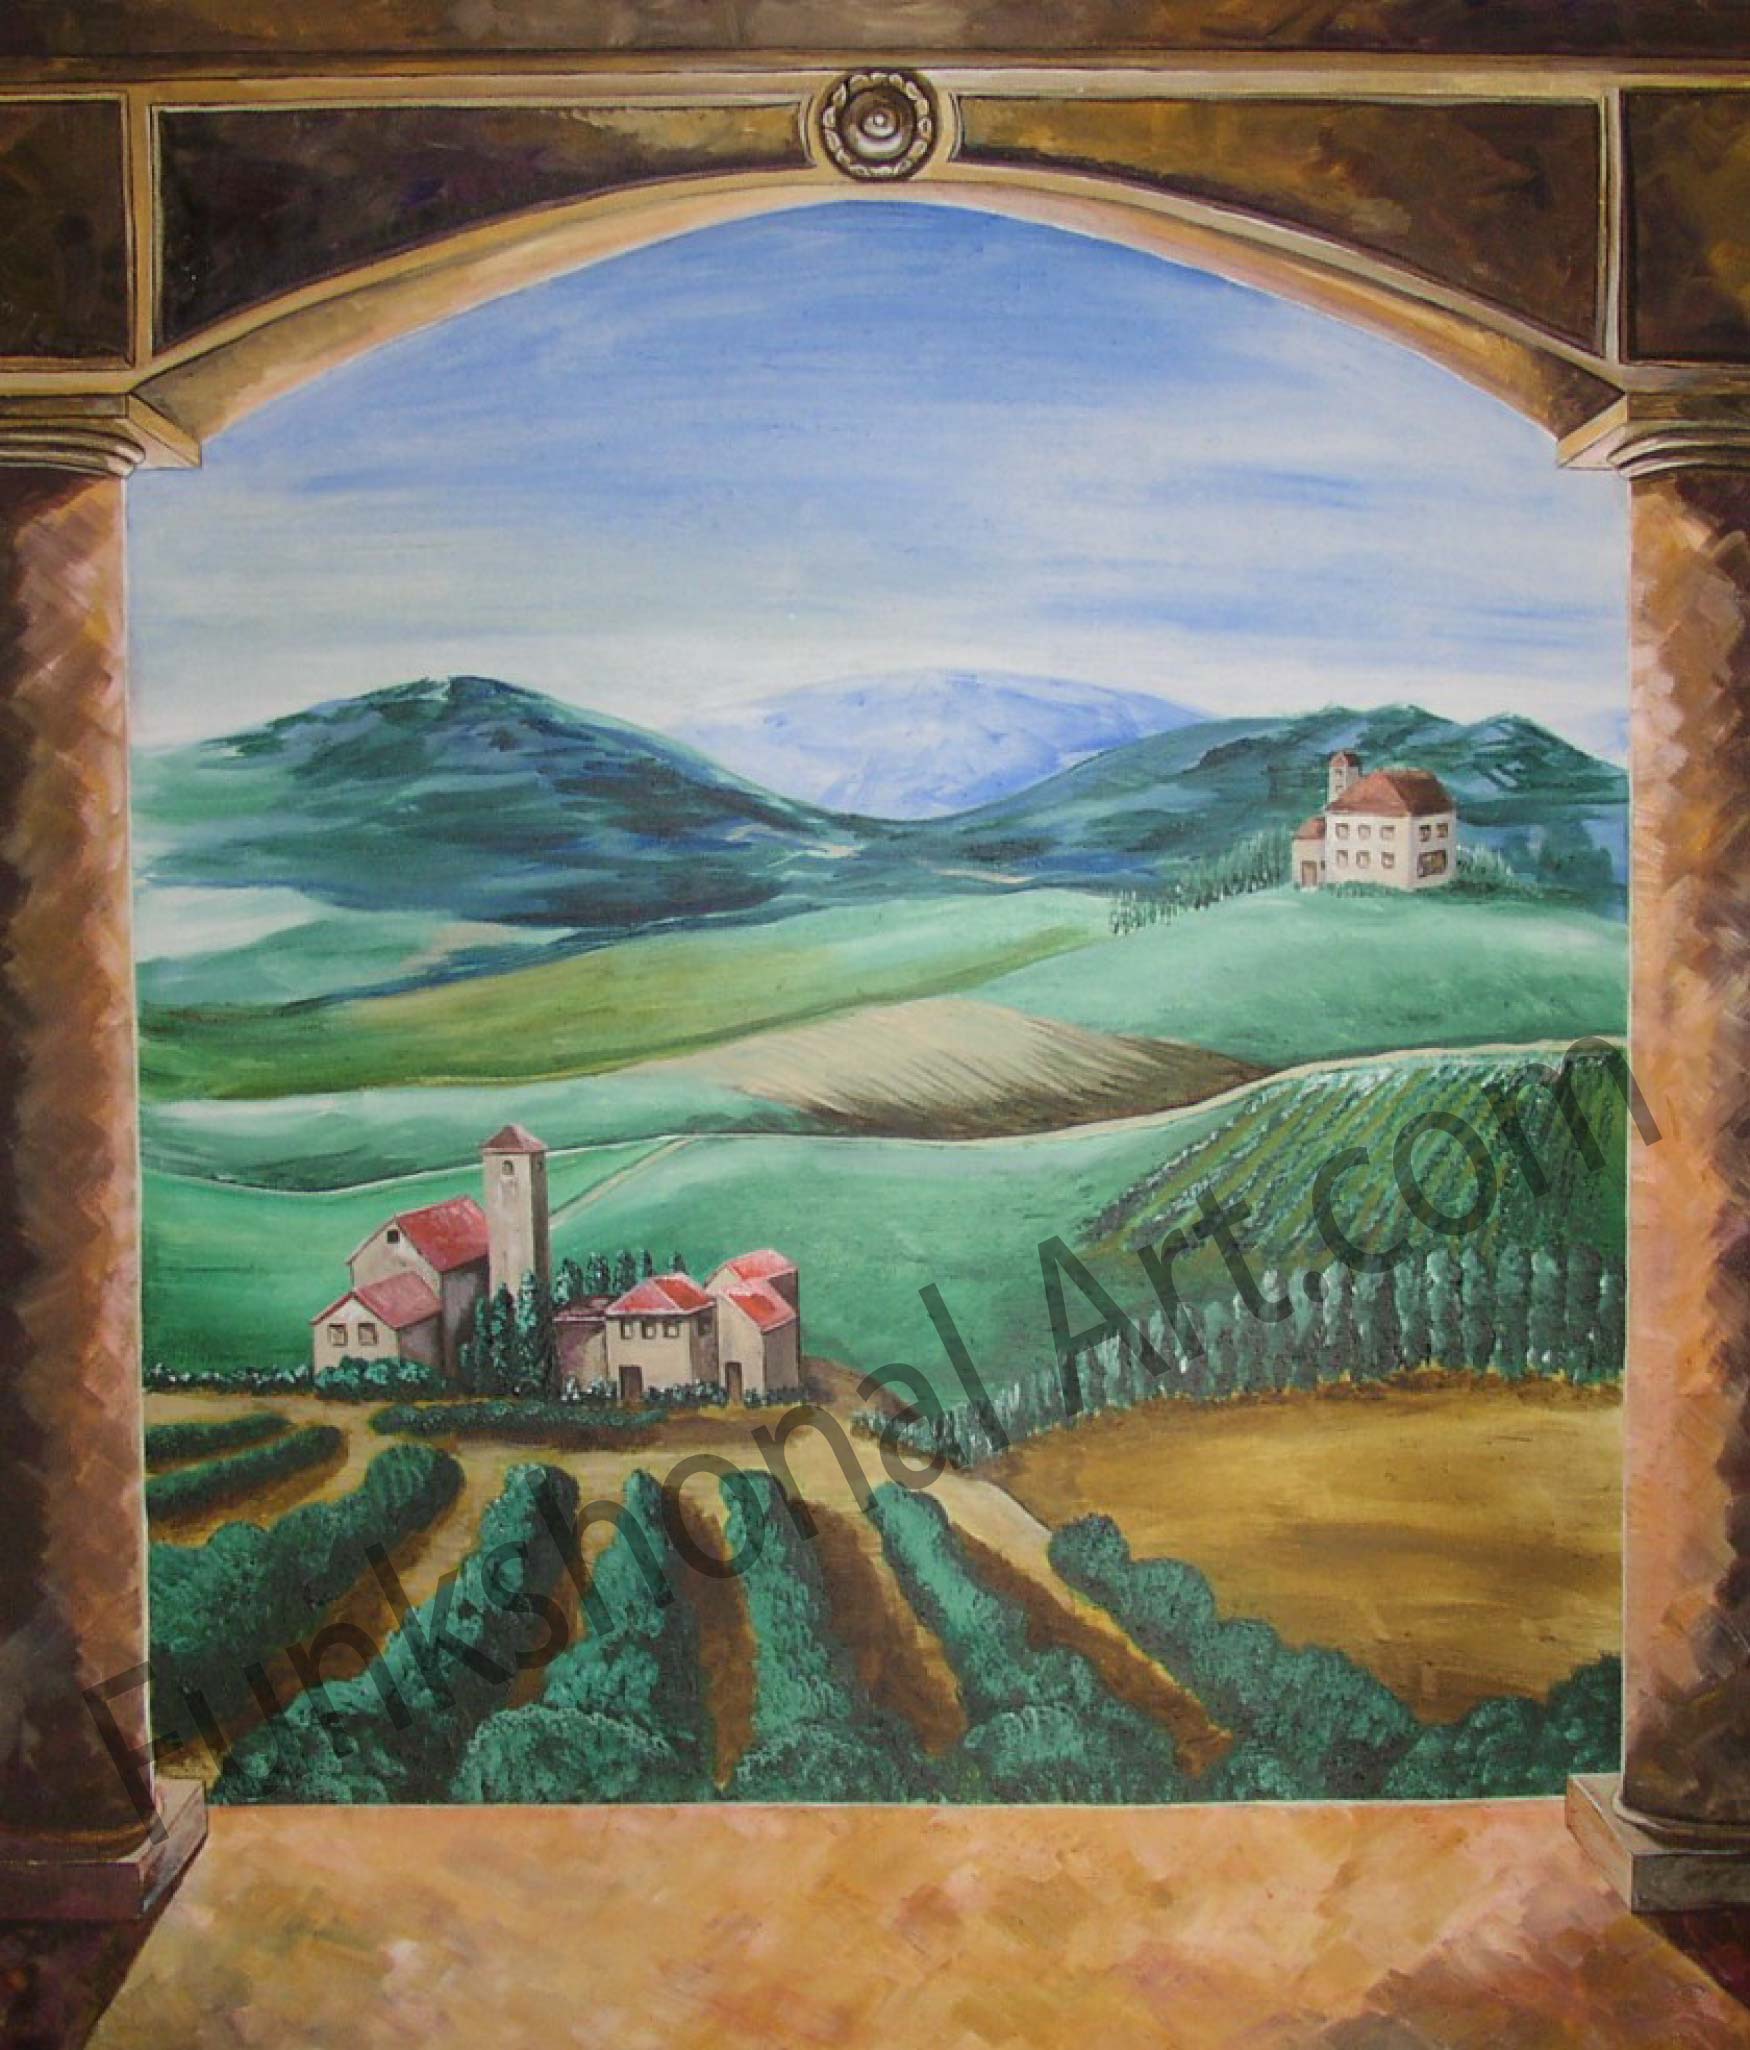 Vineyard Wallpaper Murals Of A